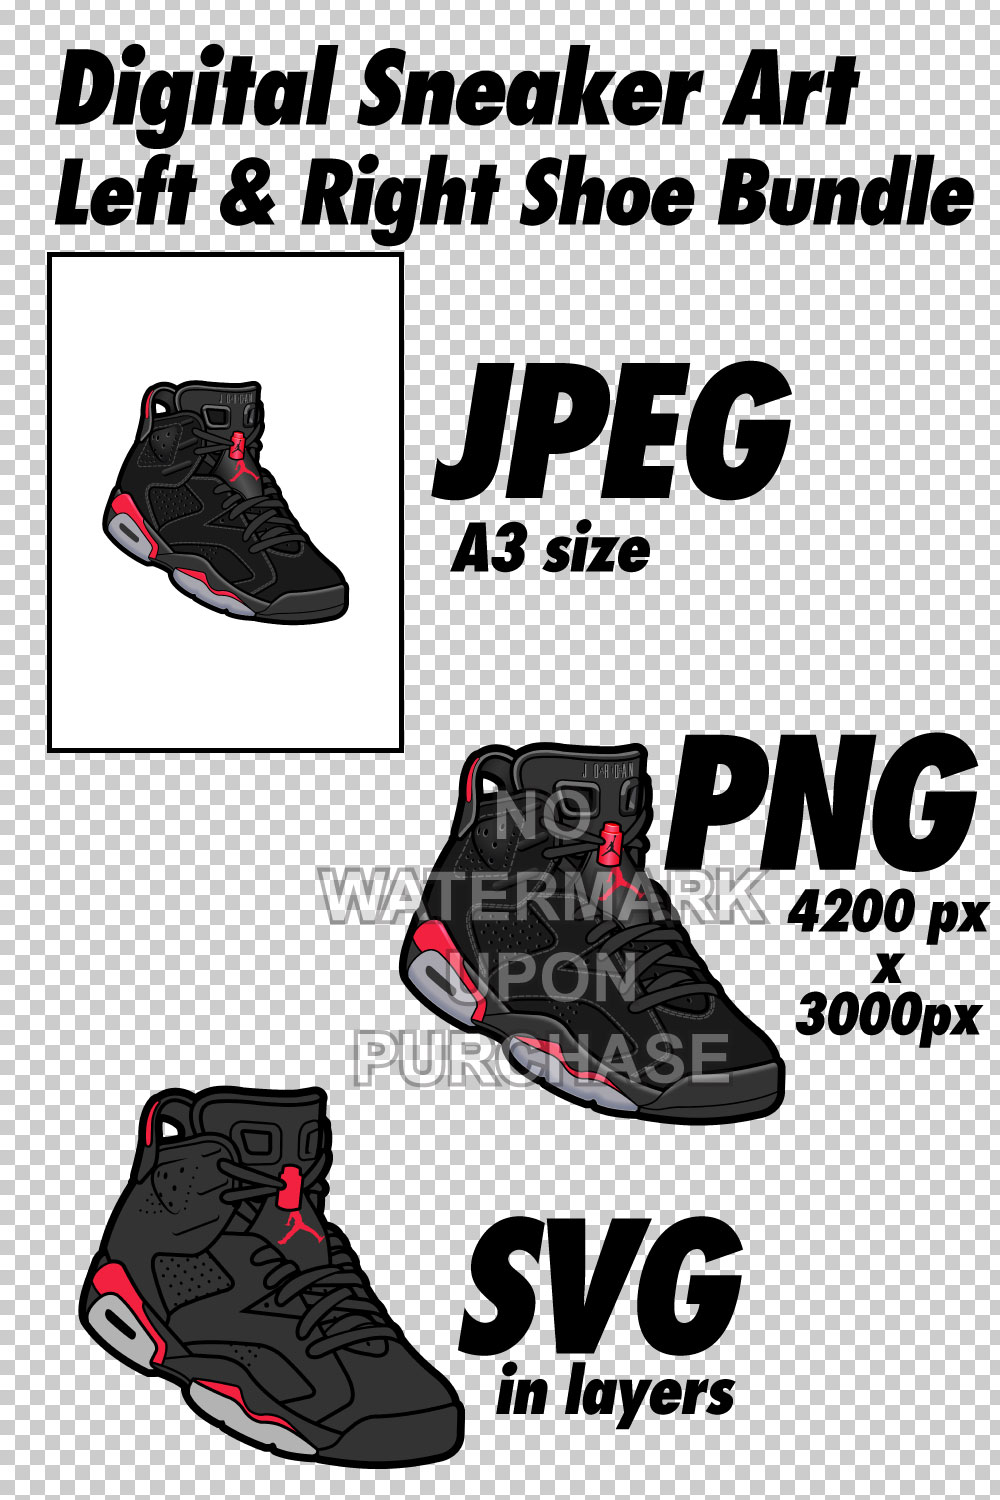 Air Jordan 6 Black Infrared JPEG PNG SVG right & left shoe bundle pinterest preview image.